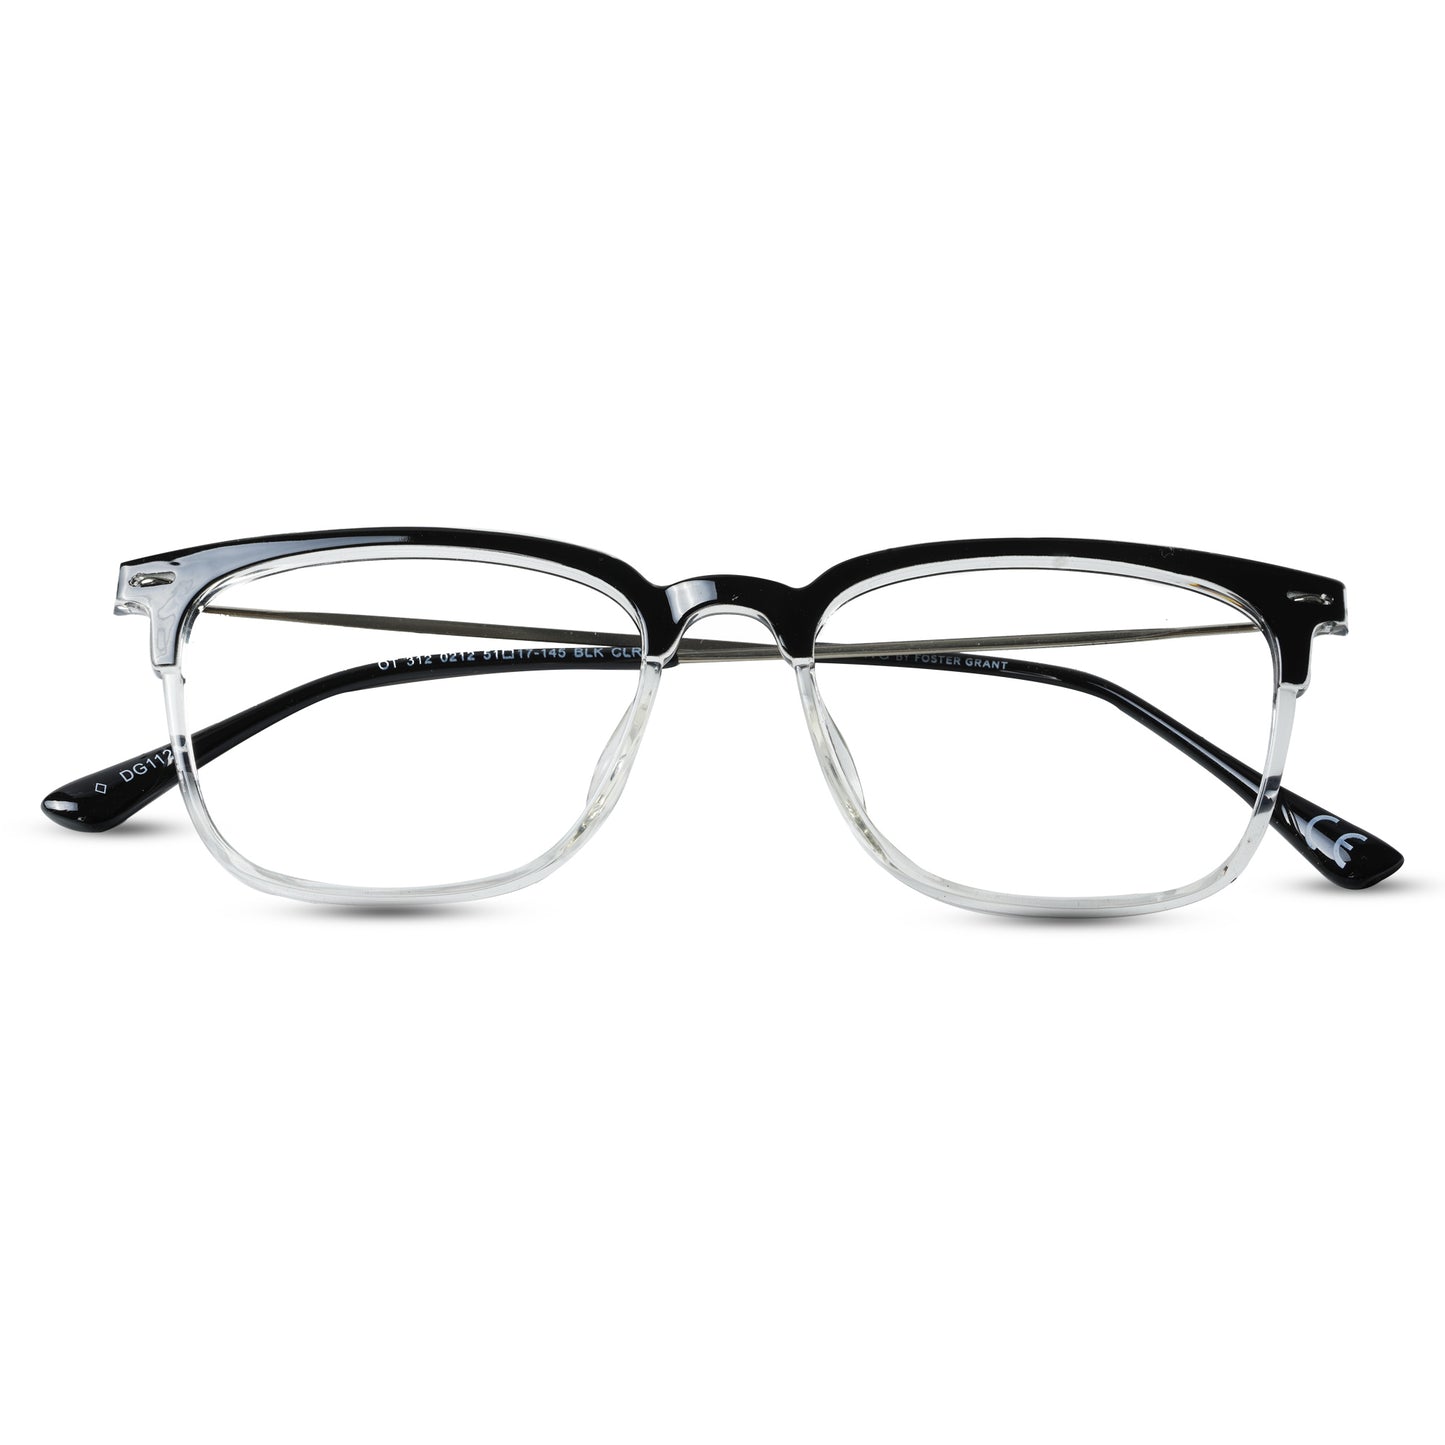 2.5 NVG Computer Glasses Black Transparent Square Eyeglasses